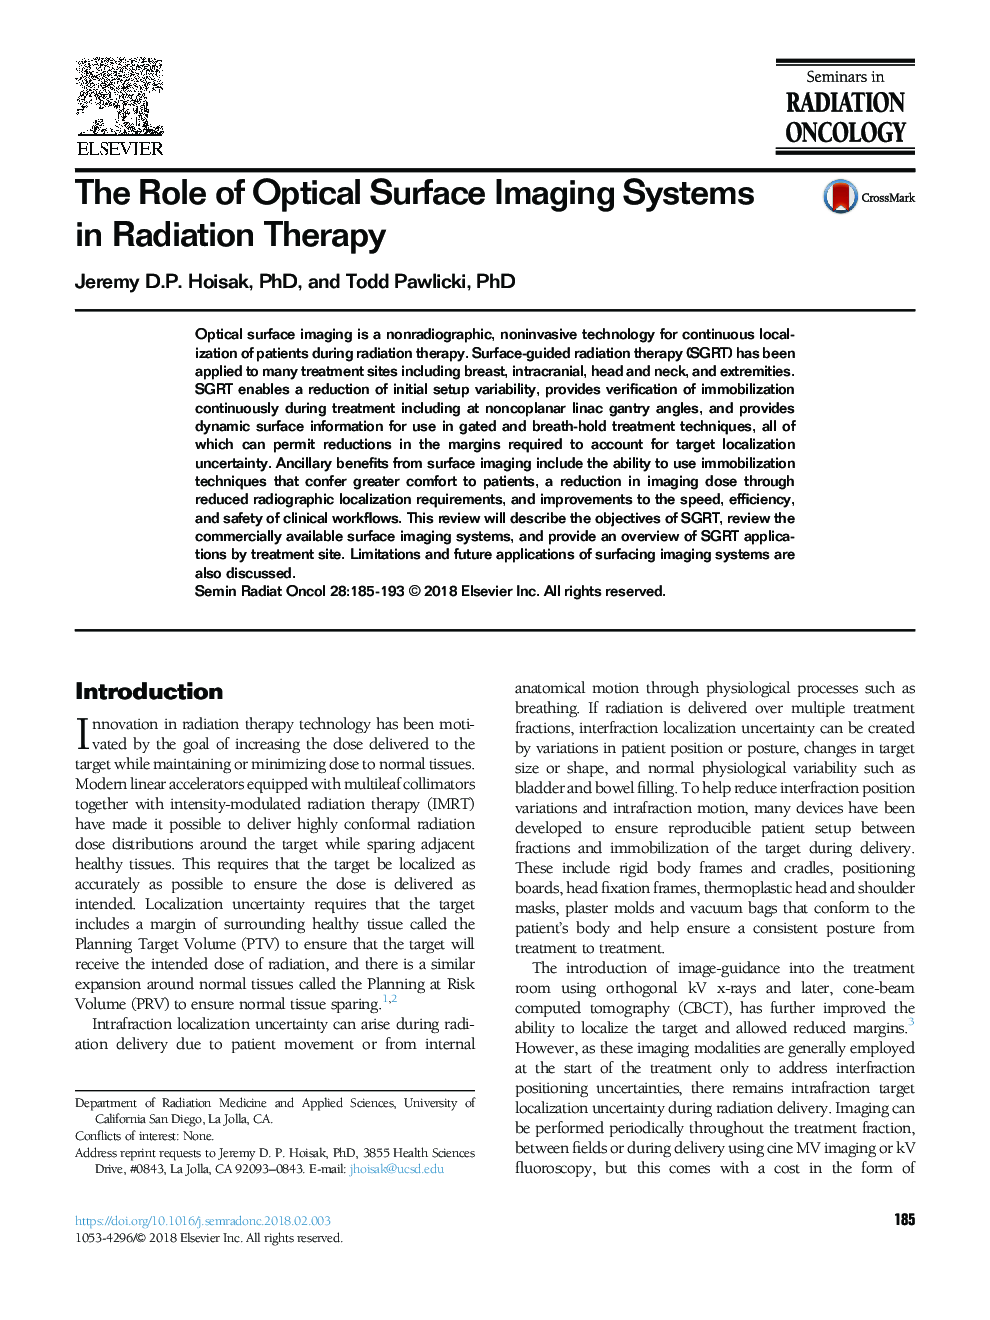 نقش سیستم های تصویربرداری سطح نوری در درمان رادیوتراپی 